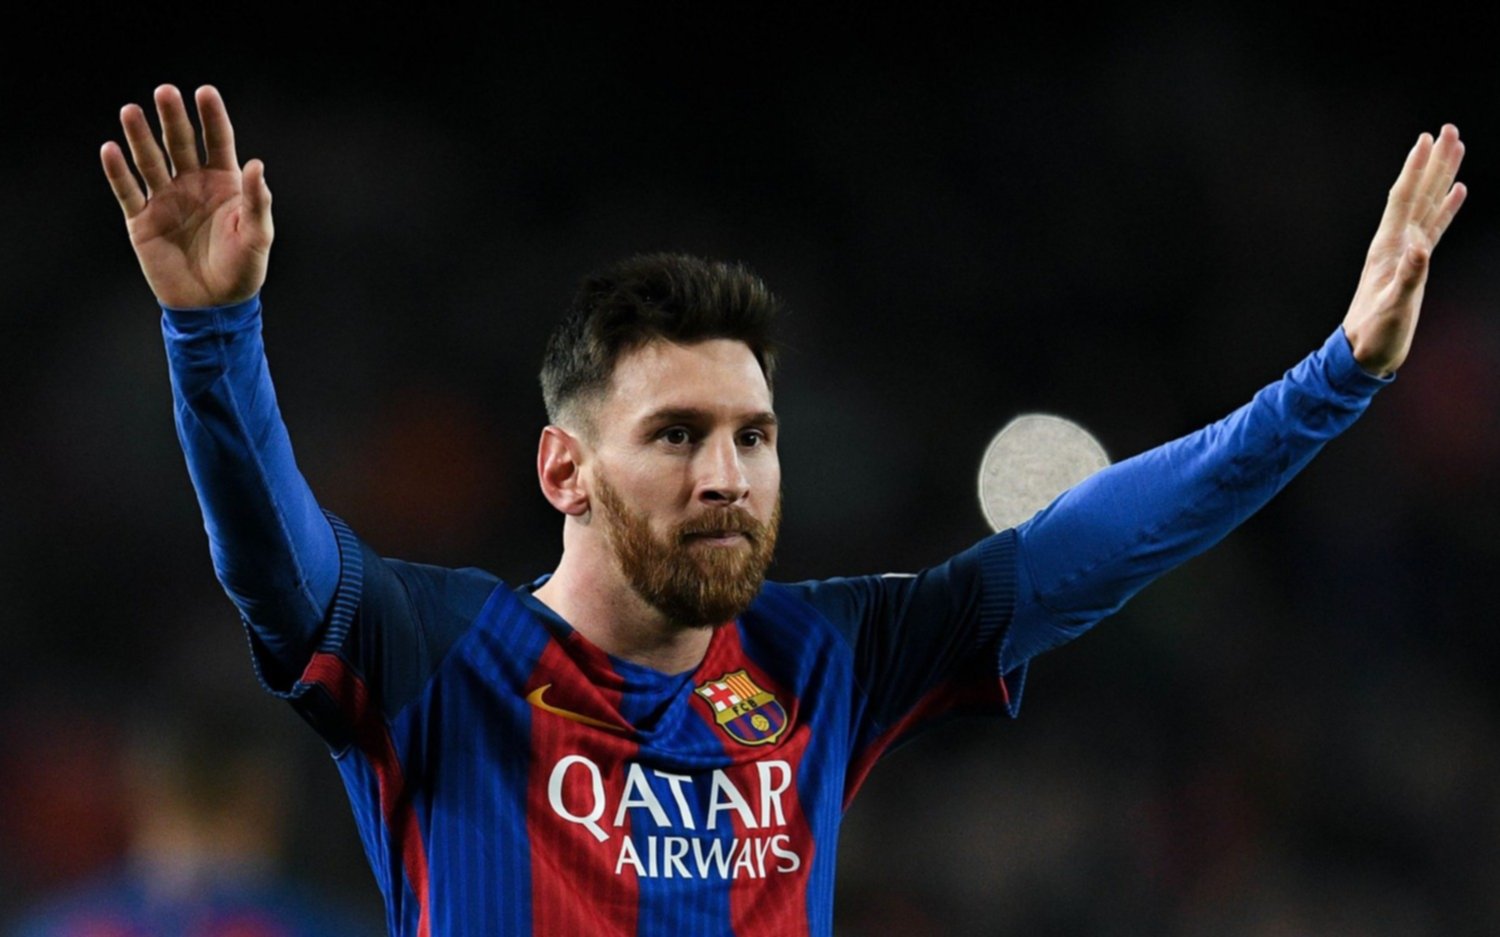 Bombazo: Barcelona irá a buscar a Lionel Messi y quiere concretar su regreso a partir de junio